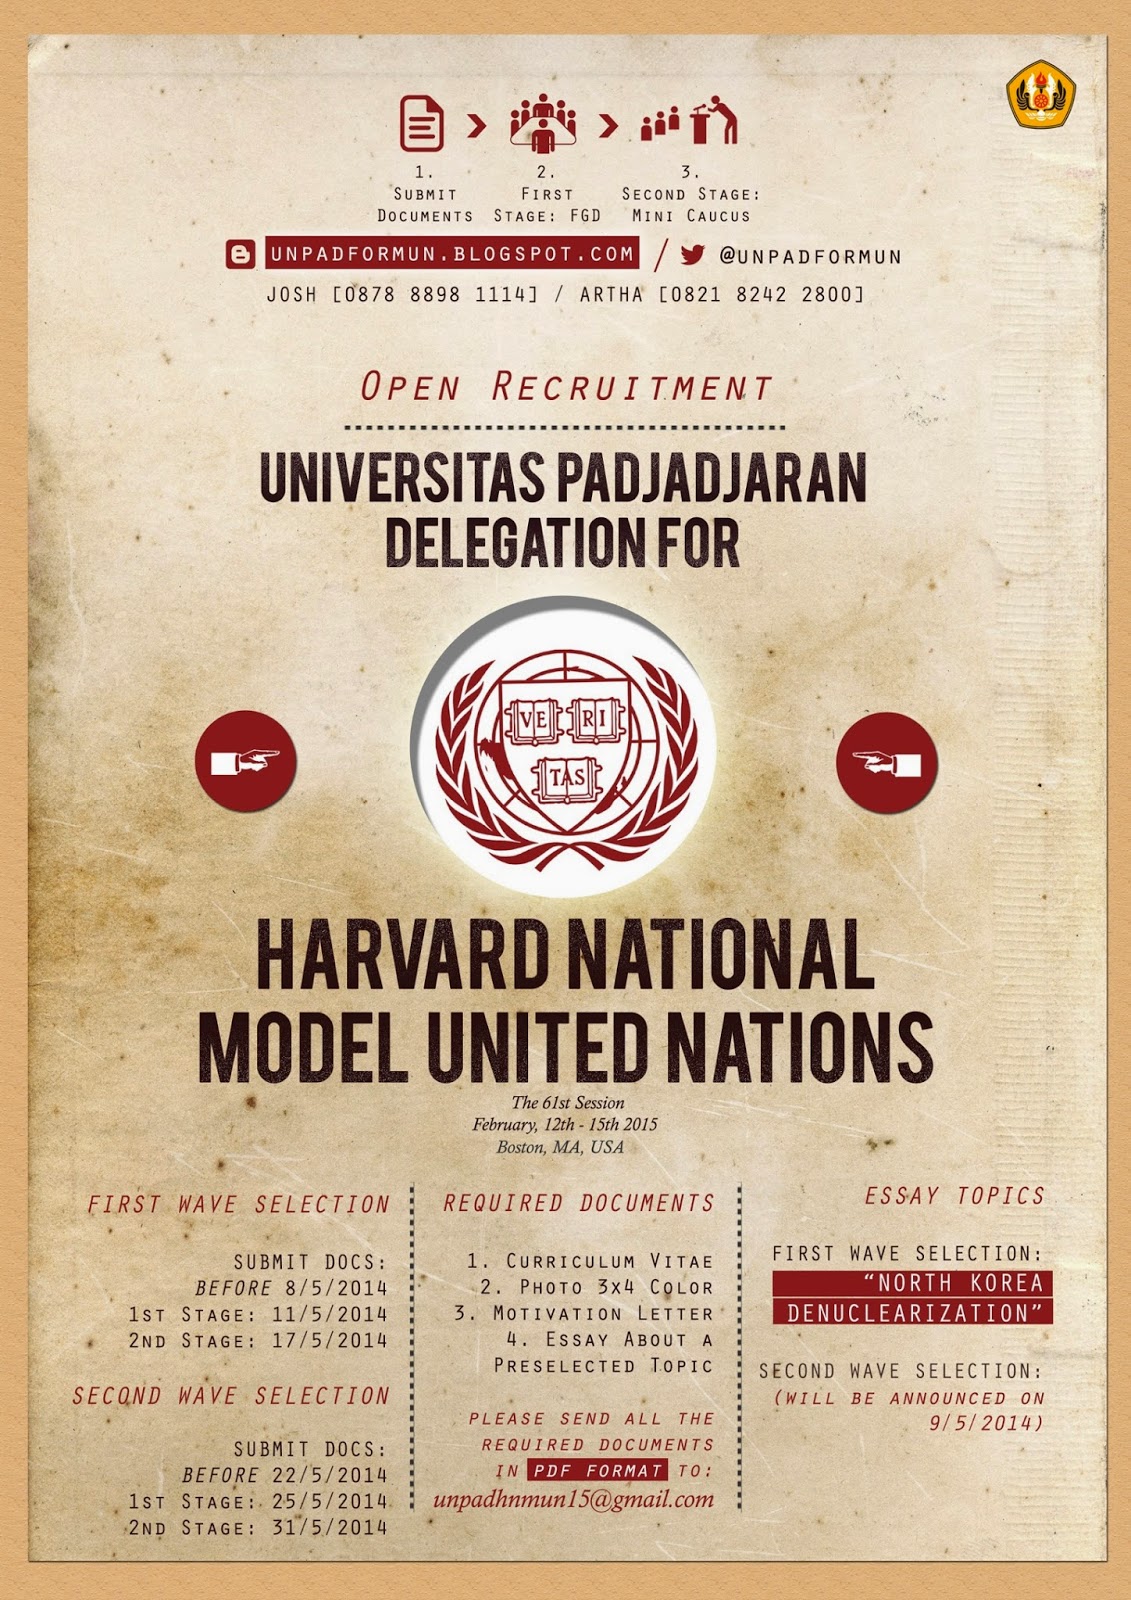  Universitas Padjadjaran  for Model United Nations ARE YOU 